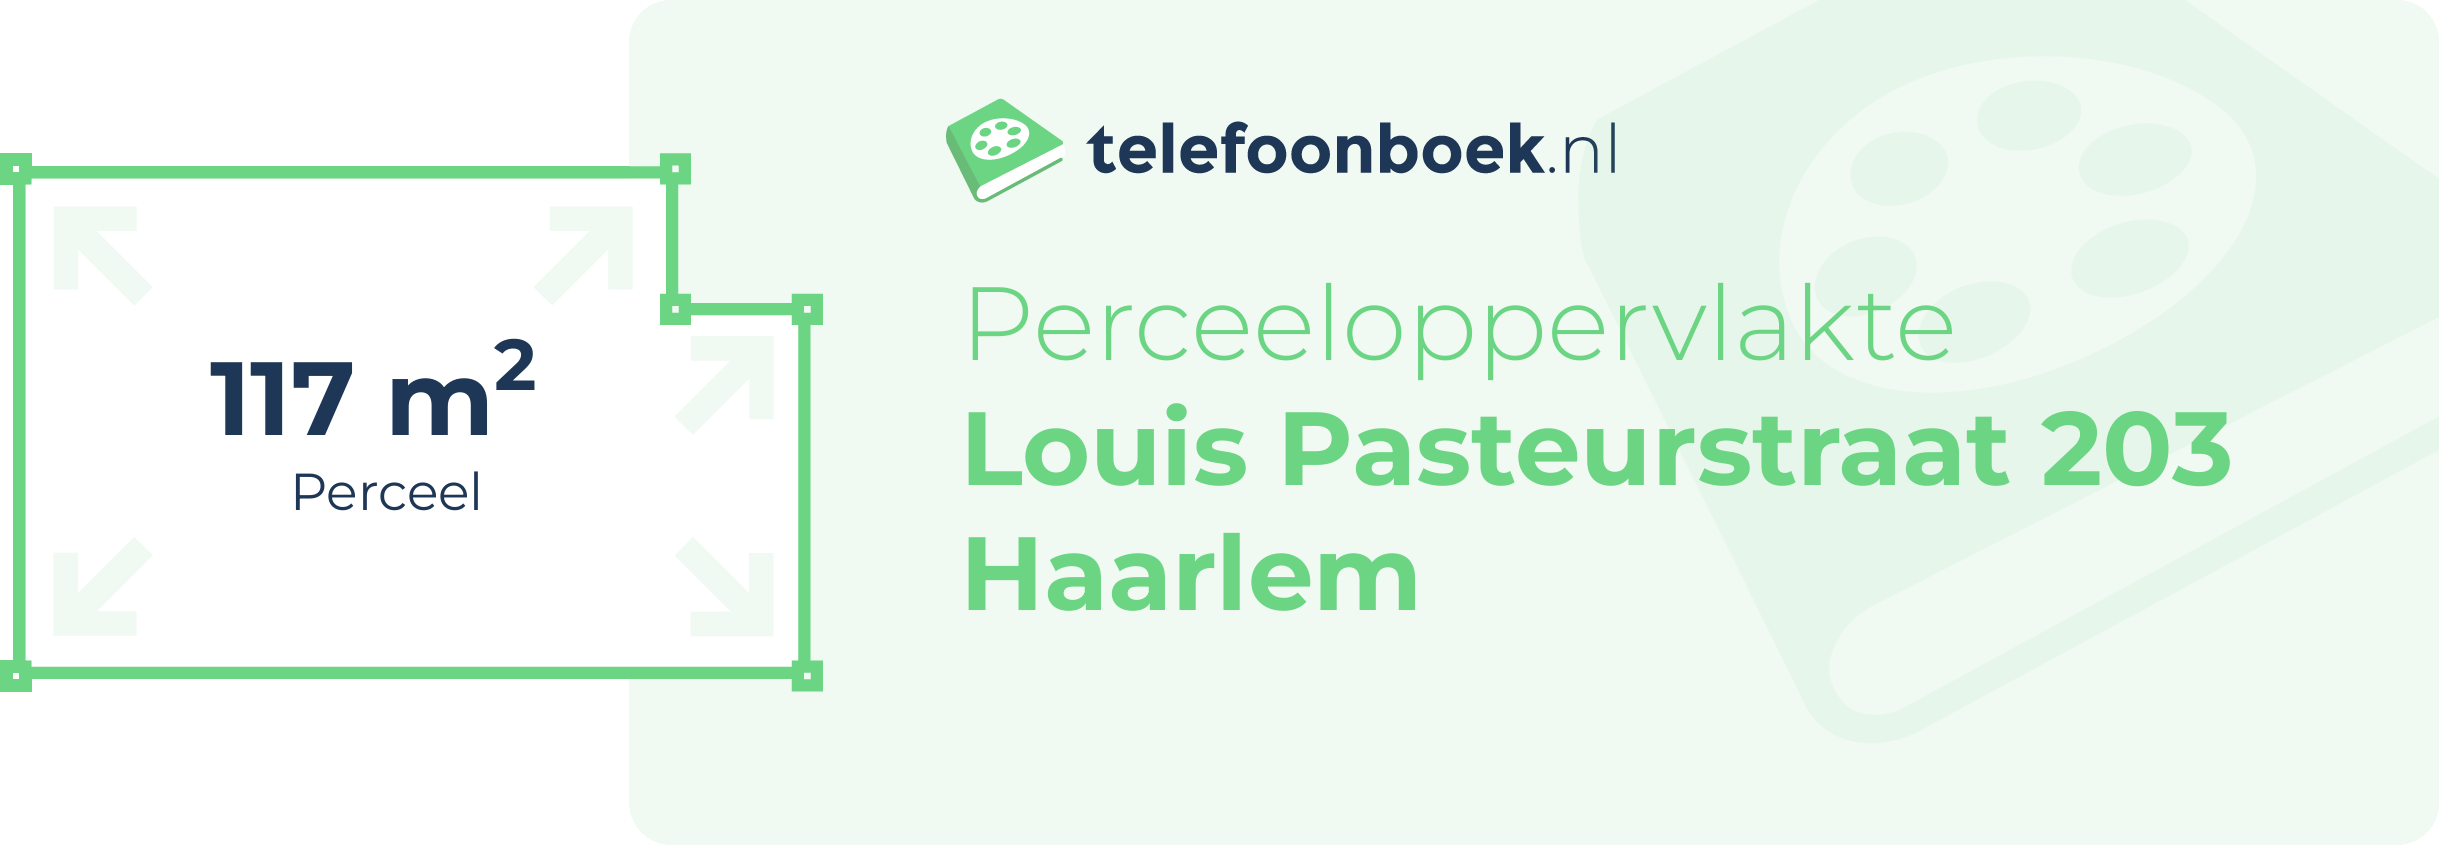 Perceeloppervlakte Louis Pasteurstraat 203 Haarlem